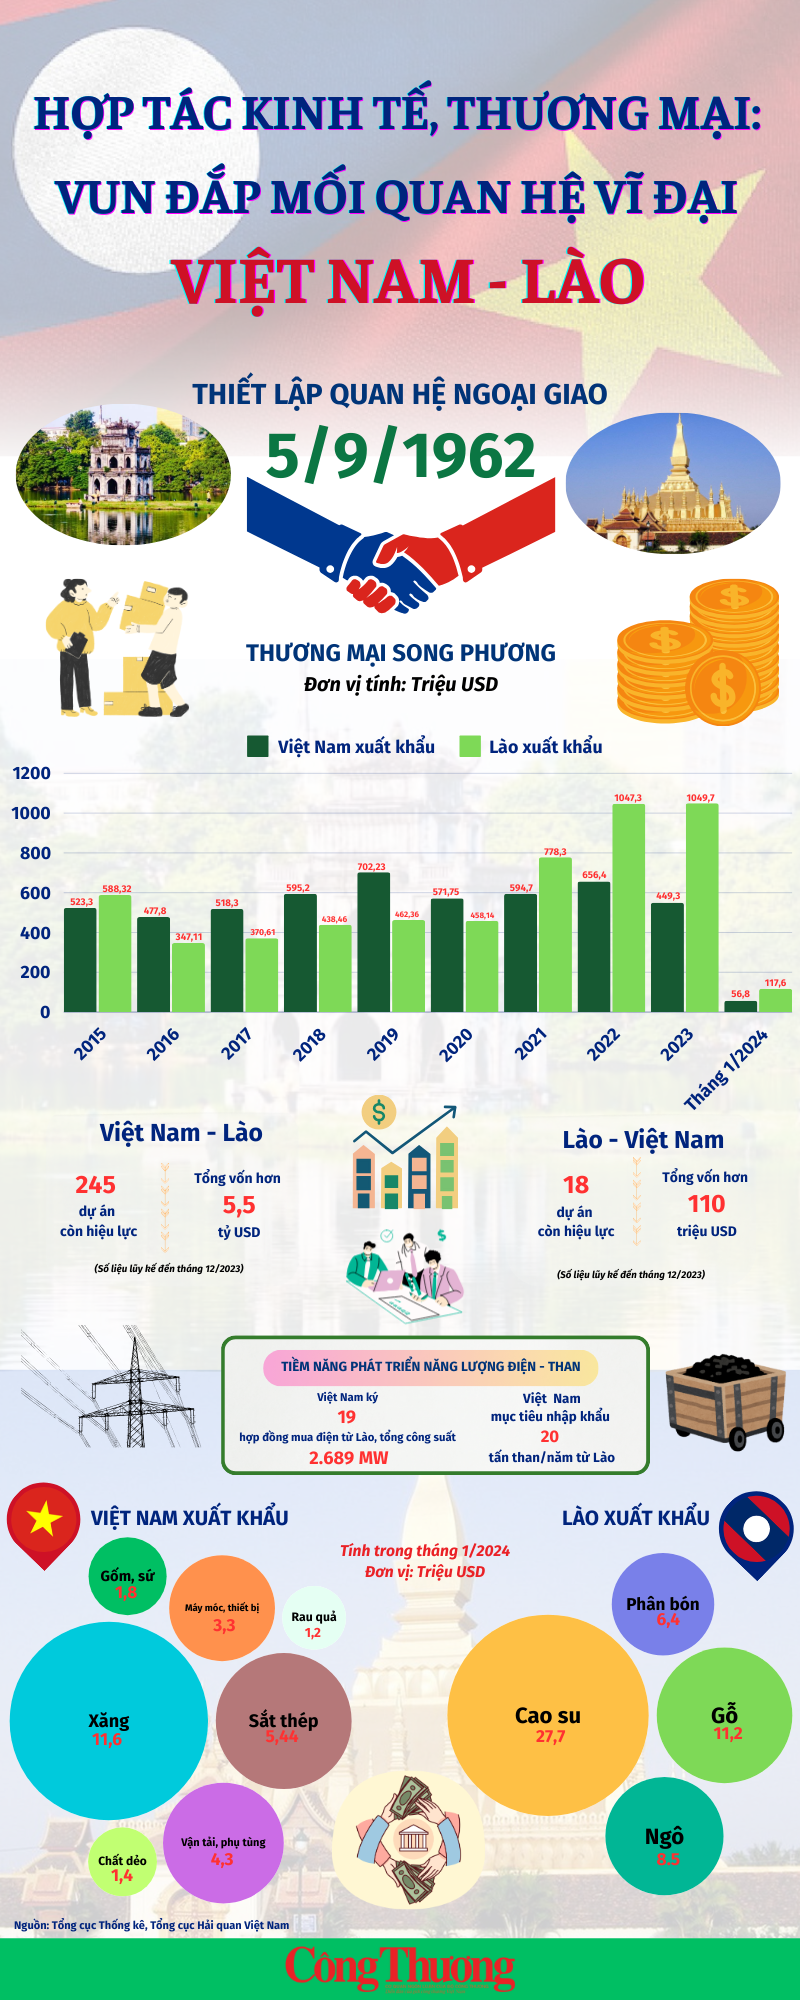 Infographics: Hợp tác kinh tế, thương mại góp phần vun đắp mối quan hệ vĩ đại Việt Nam - Lào